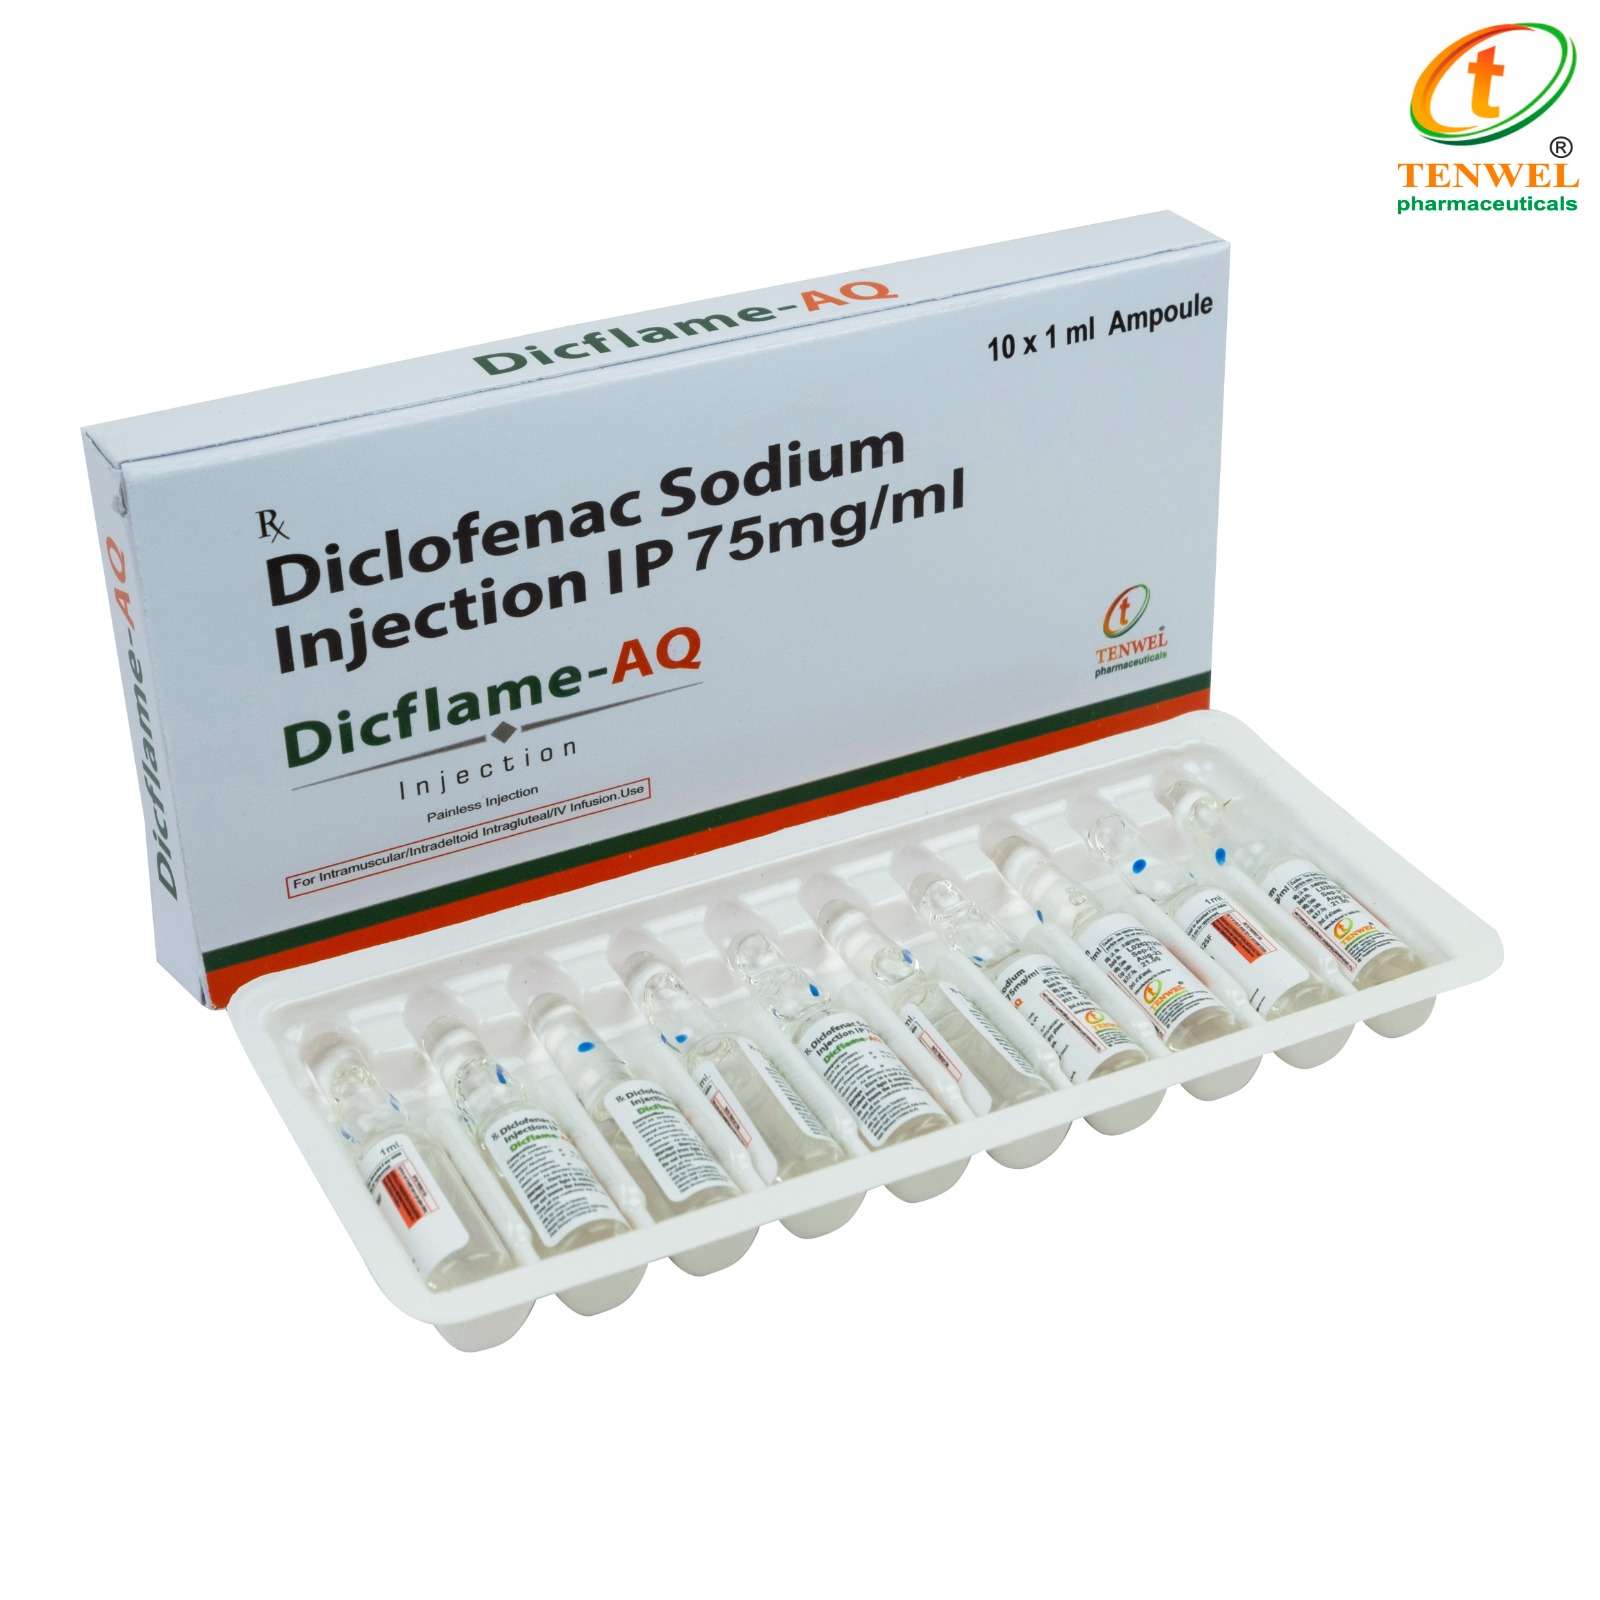 diclofenac sodium 75mg